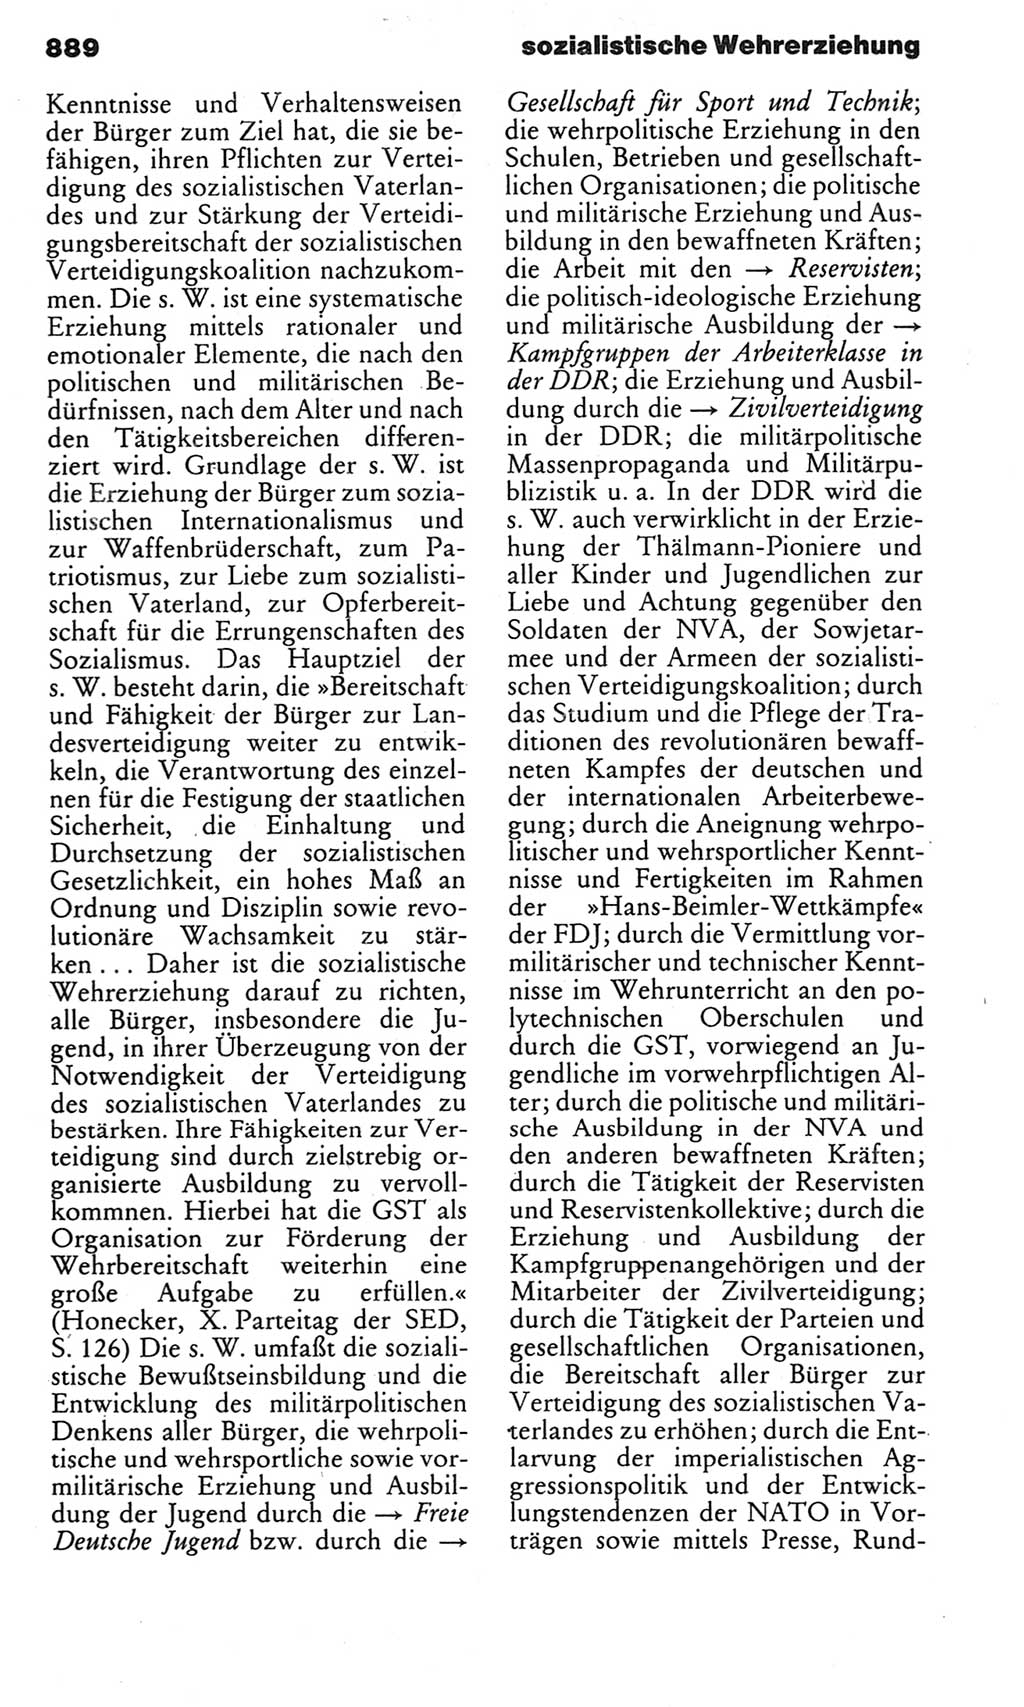 Kleines politisches Wörterbuch [Deutsche Demokratische Republik (DDR)] 1983, Seite 889 (Kl. pol. Wb. DDR 1983, S. 889)